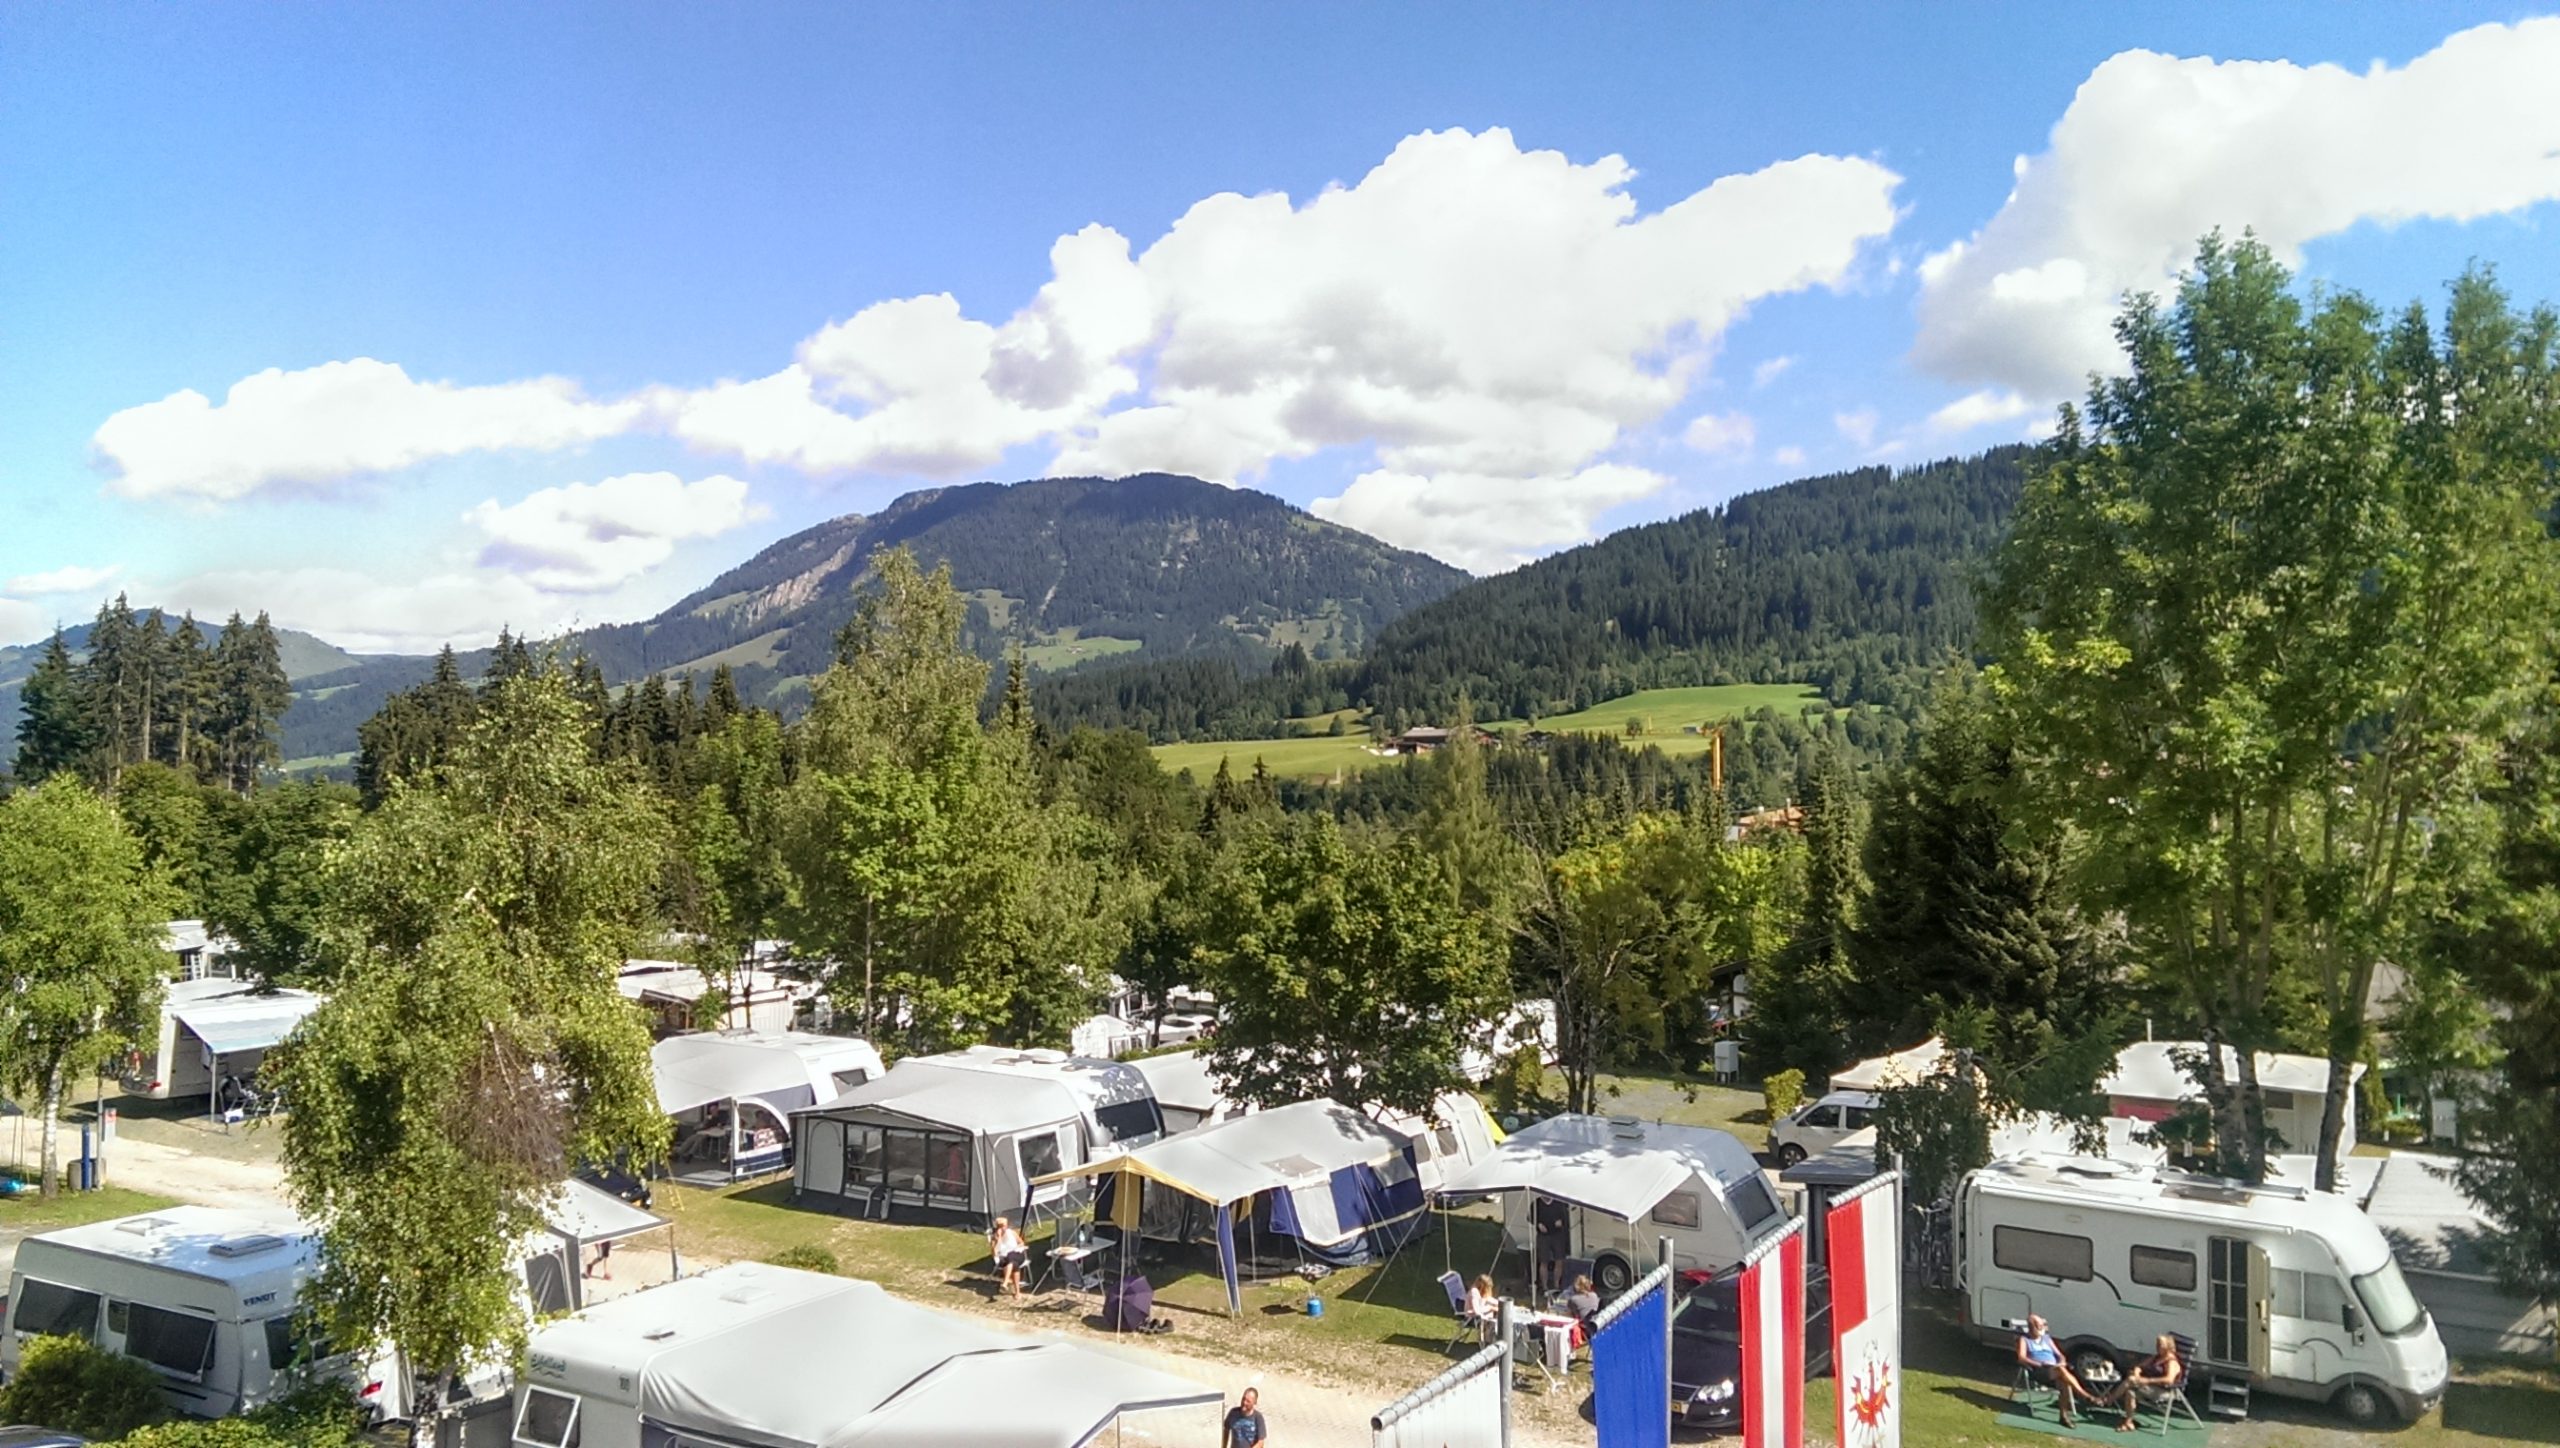 Campingplatz in Tirol | Campingversicherung für Dauercamper